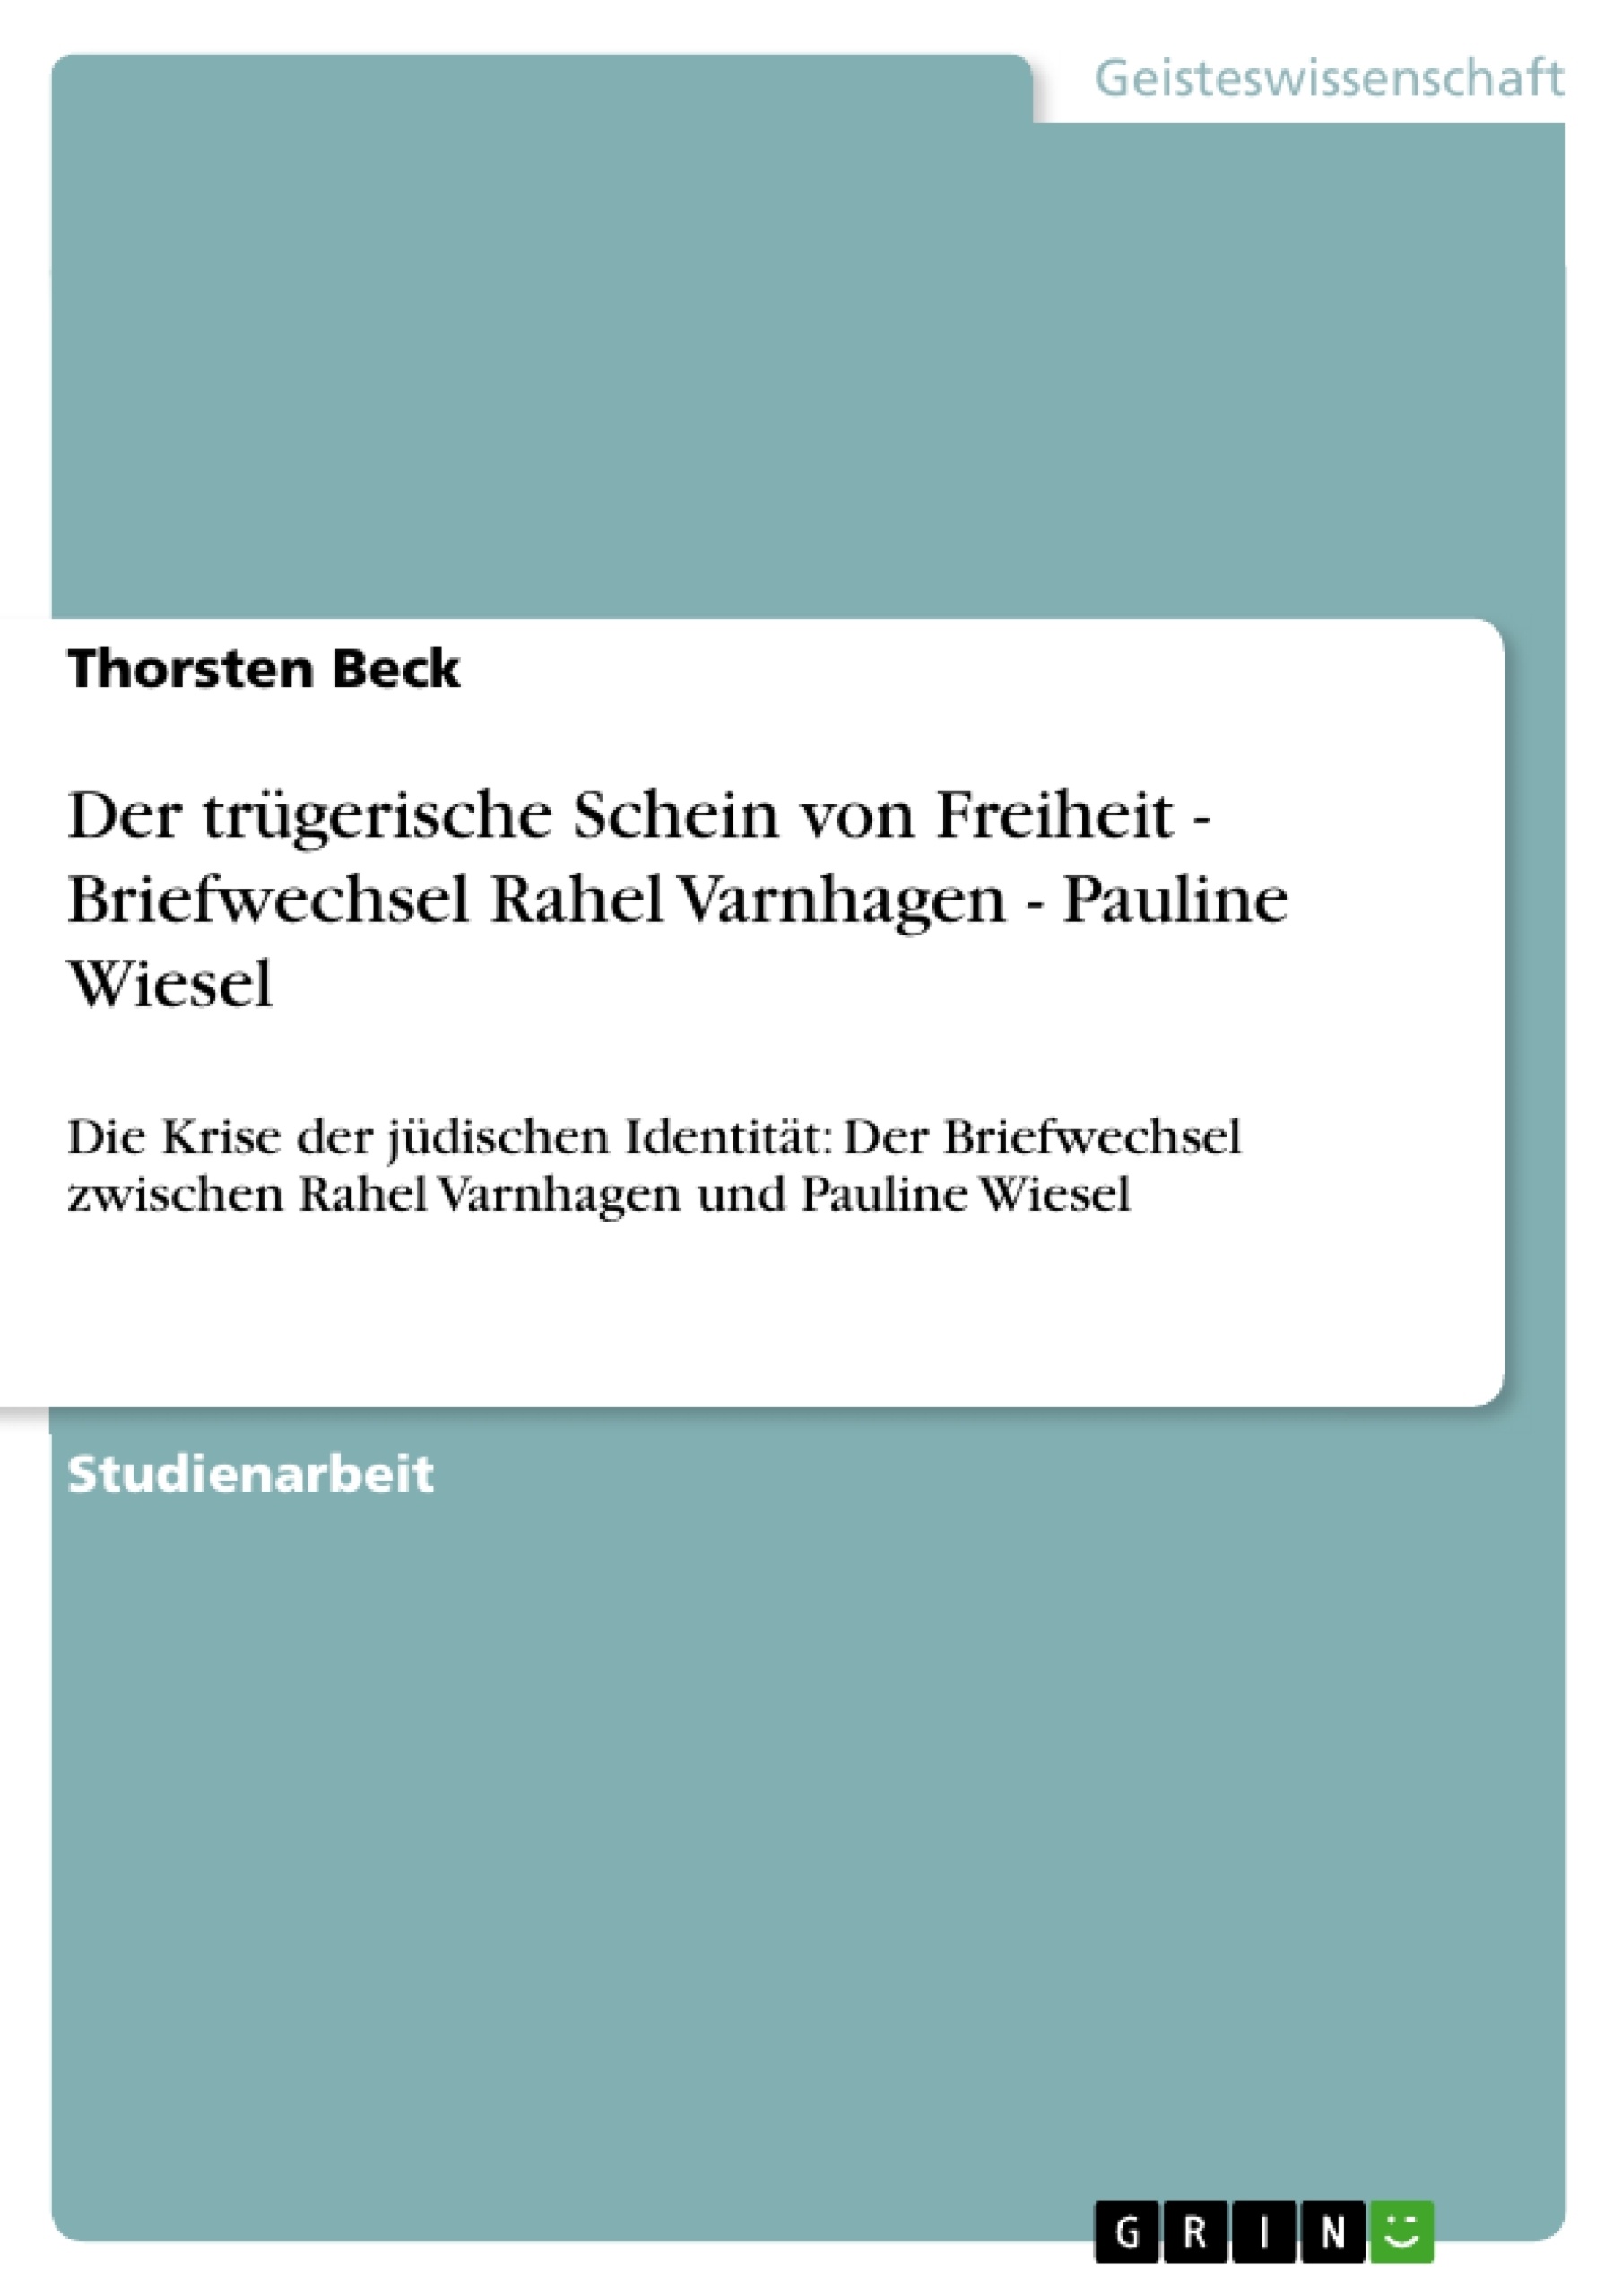 Titre: Der trügerische Schein von Freiheit - Briefwechsel Rahel Varnhagen - Pauline Wiesel